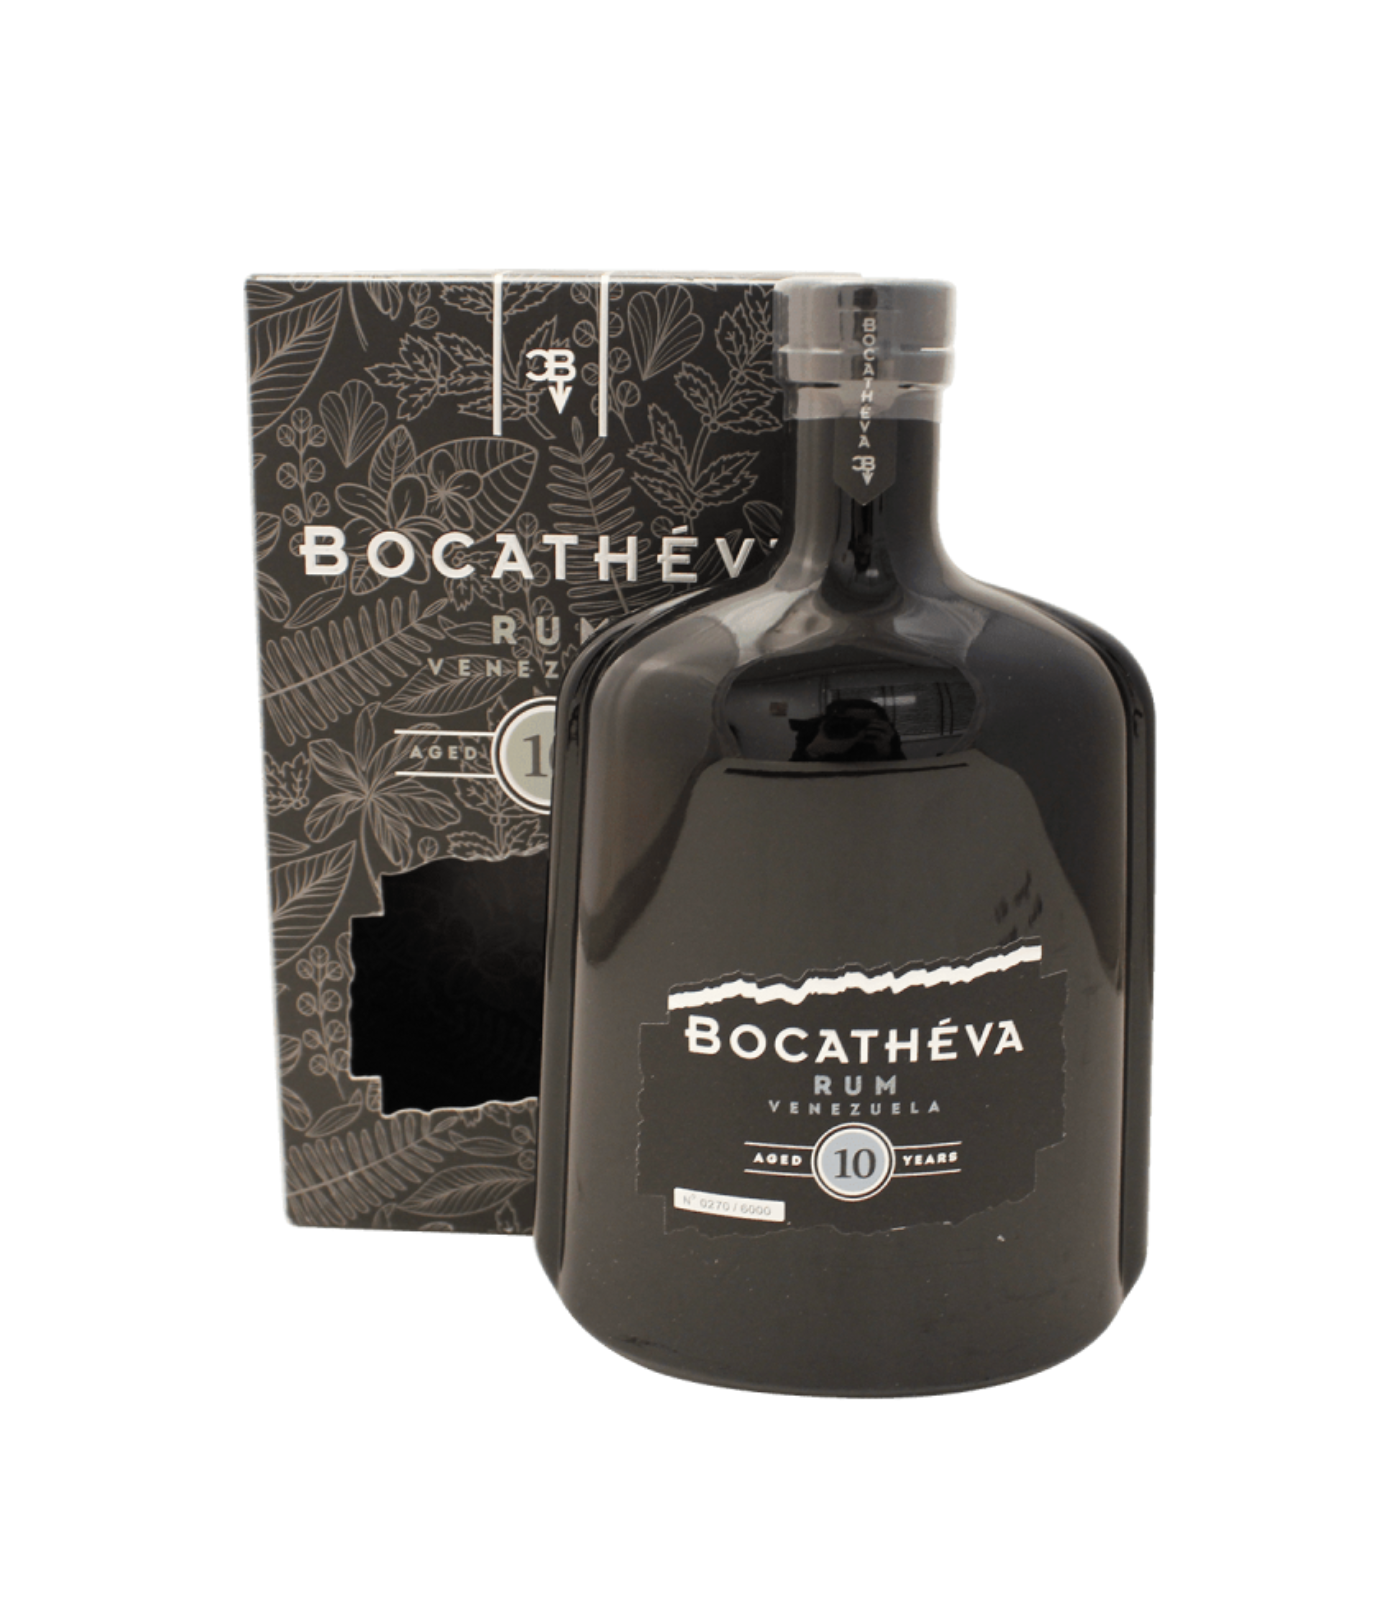 Bocatheva 10 Year Old Rum - Venezuela (70cl; 45%)